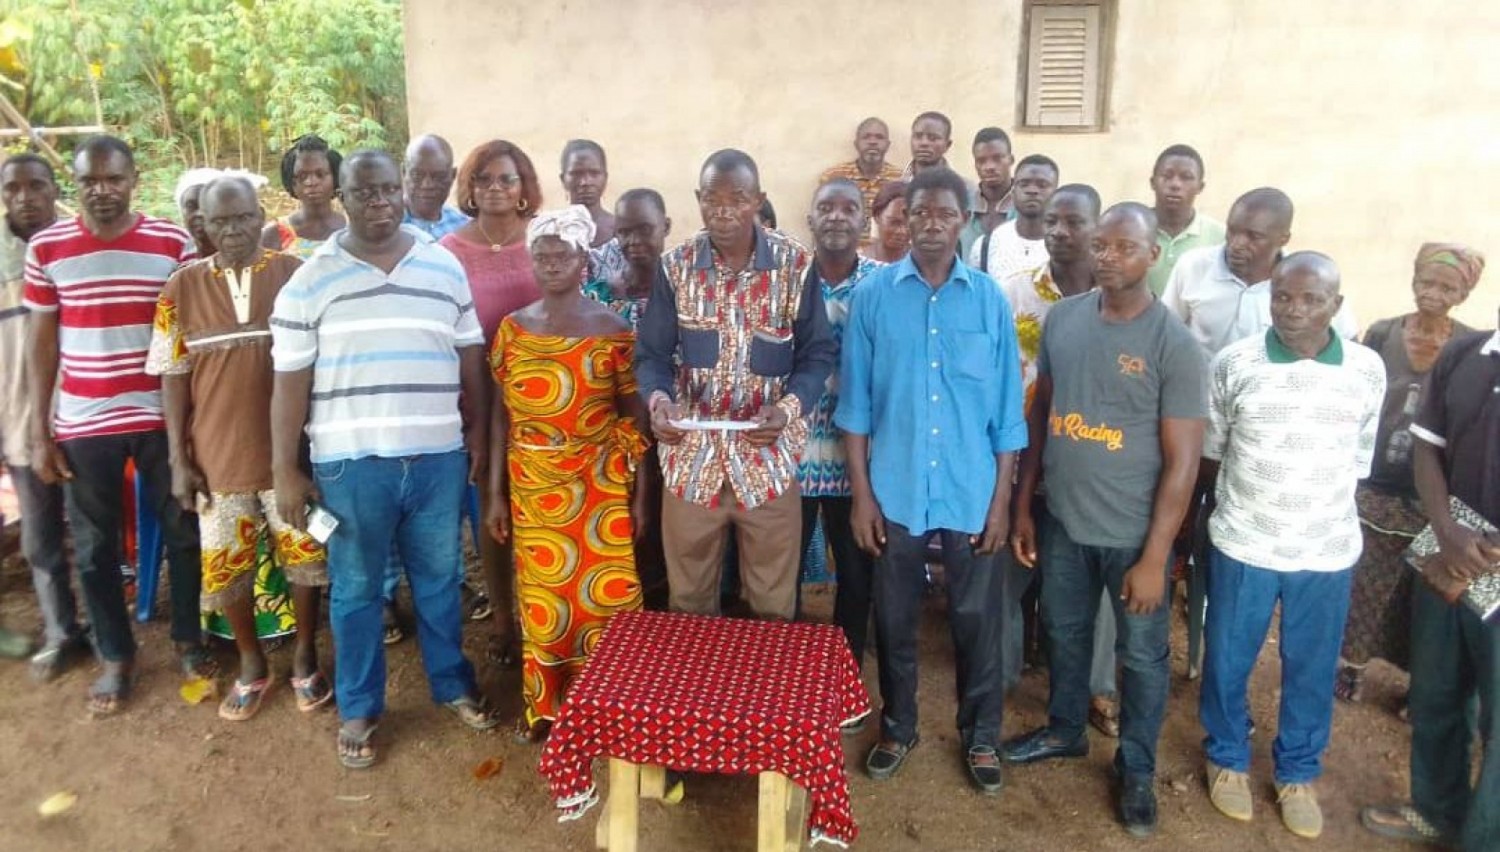 Côte d'Ivoire : Bouaké, un chef accusé de spolier et brader les terres de son village à des personnes dont des autorités, sa destitution exigée par ses parents